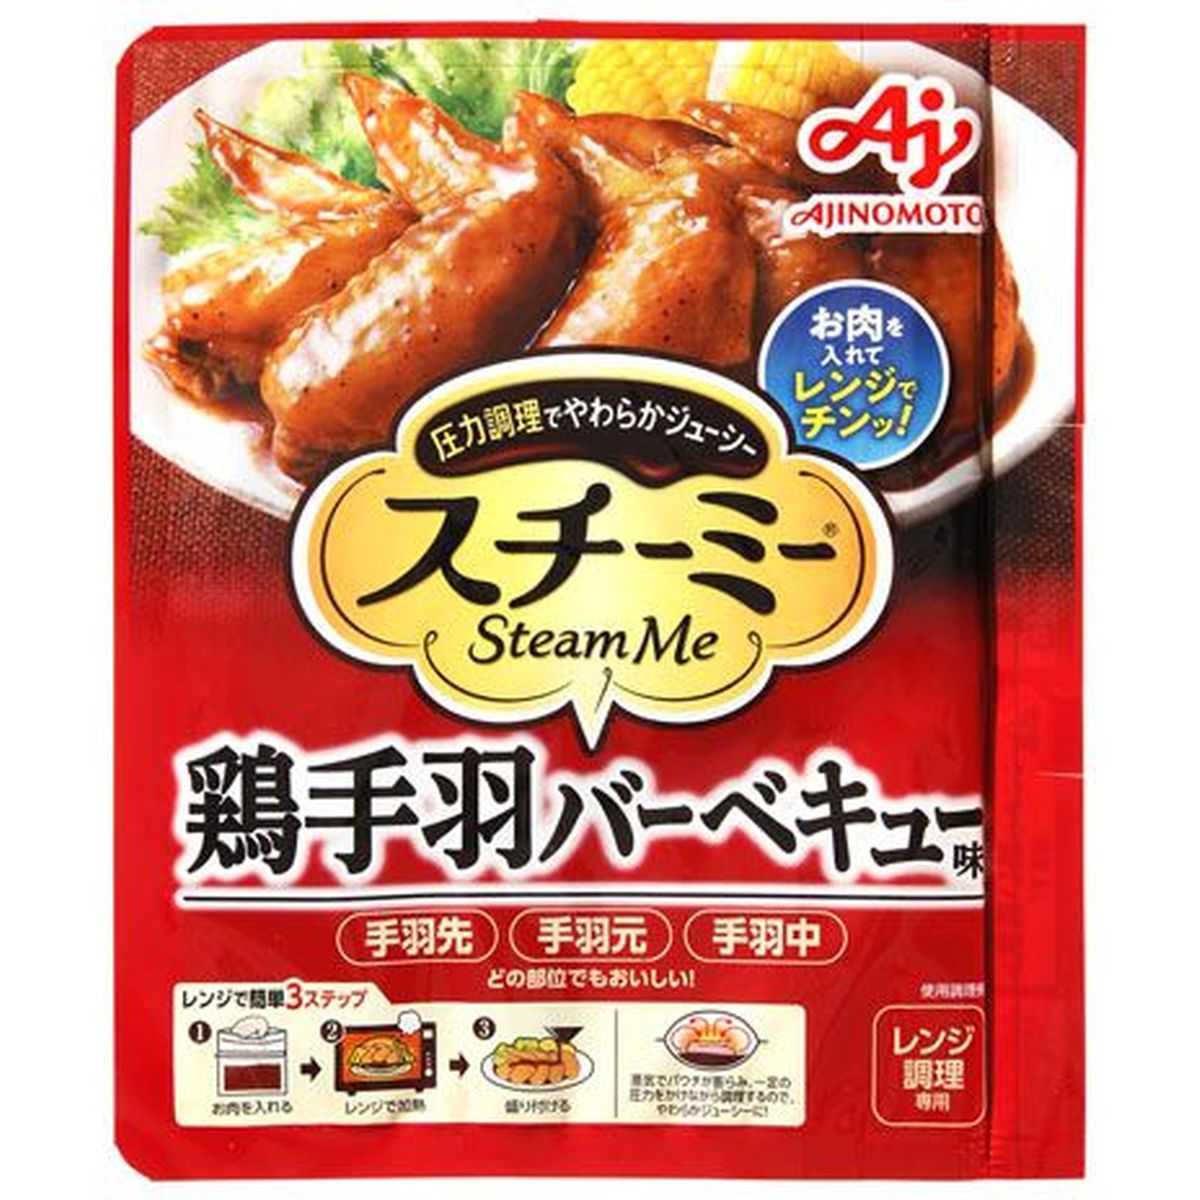 【10個入リ】味ノ素 スチーミー 鶏手羽バーベキュー味 75g